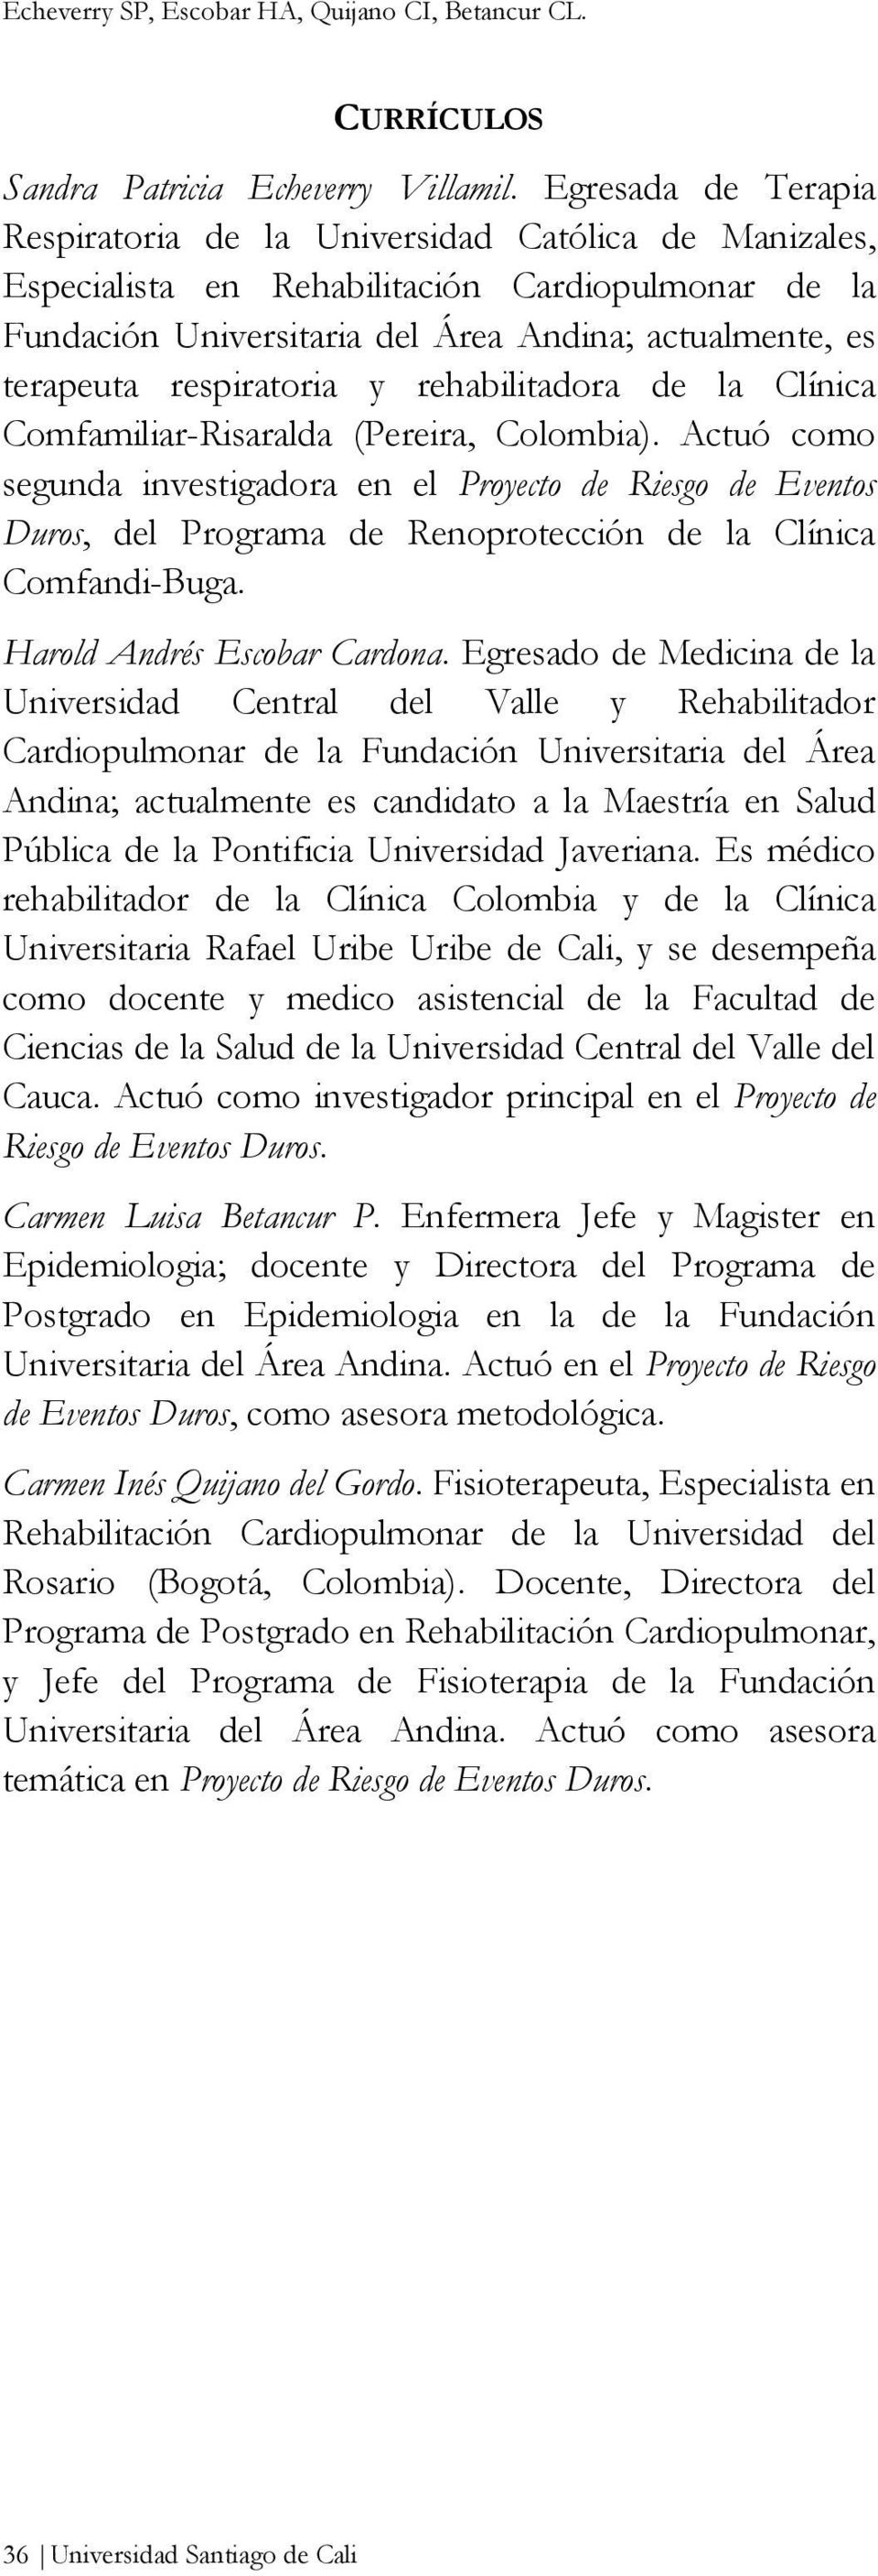 respiratoria y rehabilitadora de la Clínica Comfamiliar-Risaralda (Pereira, Colombia).